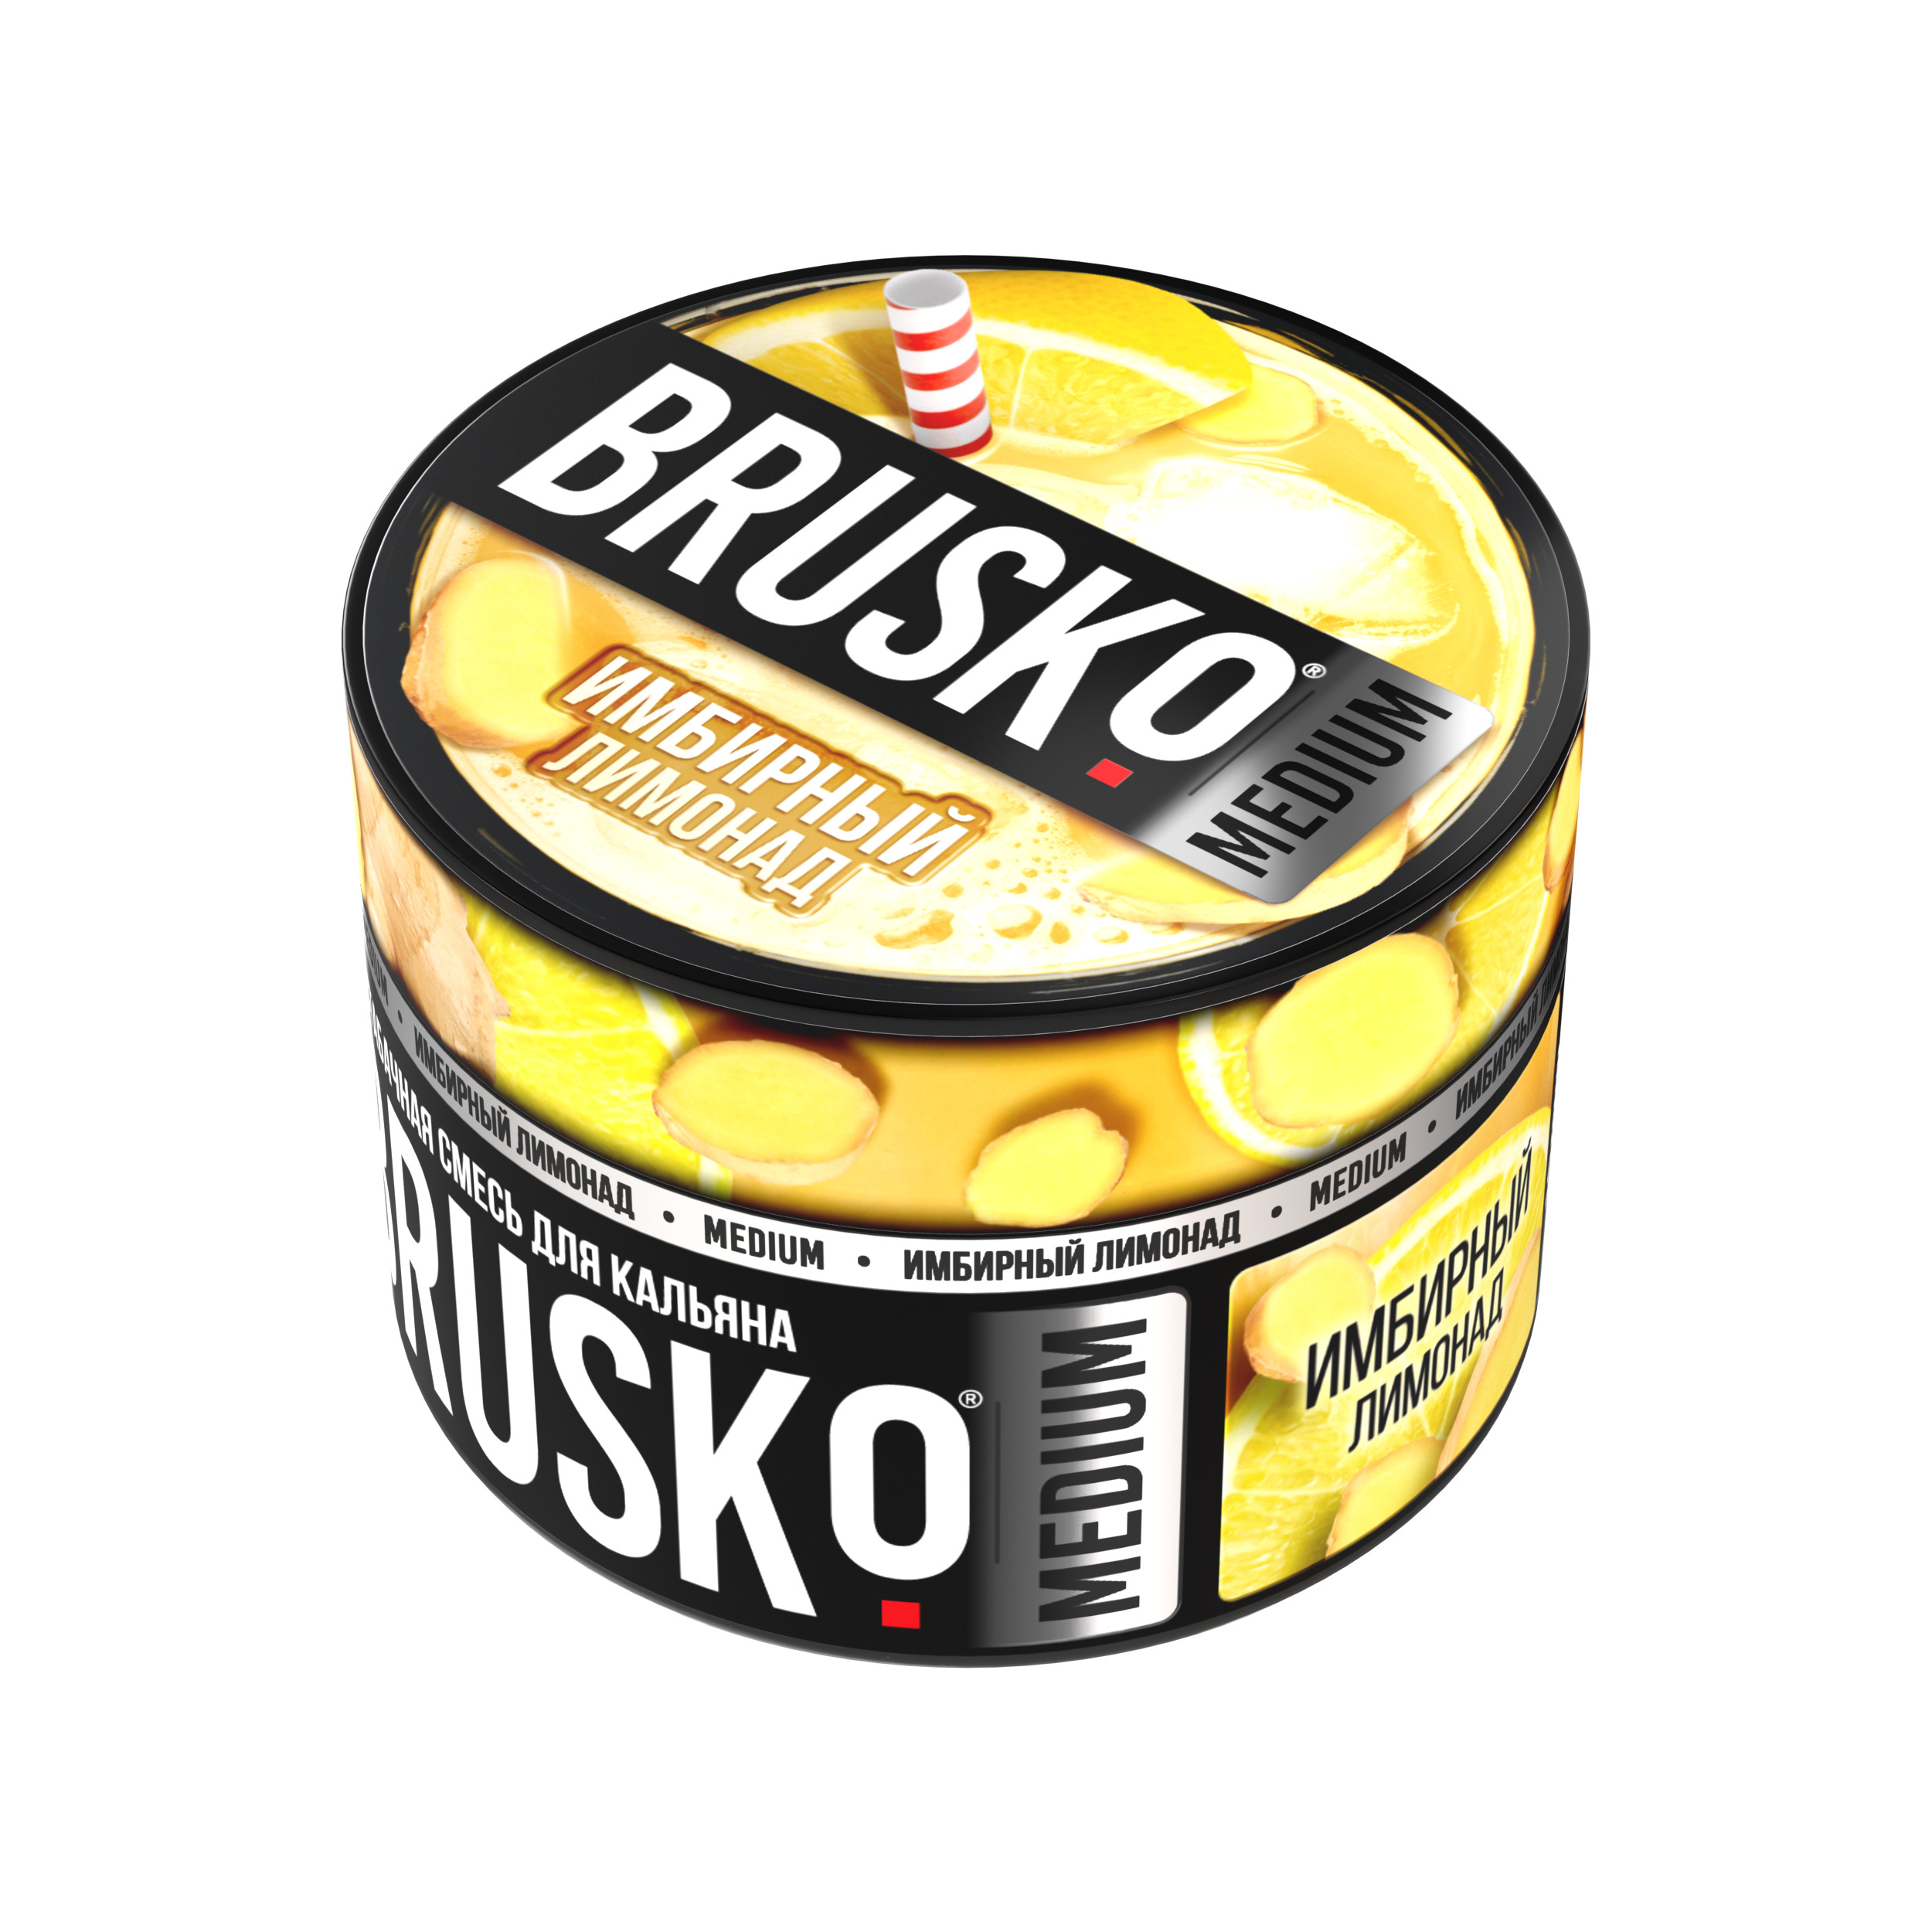 Бестабачная смесь для кальяна BRUSKO, 50 г, Имбирный лимонад, Medium (М)